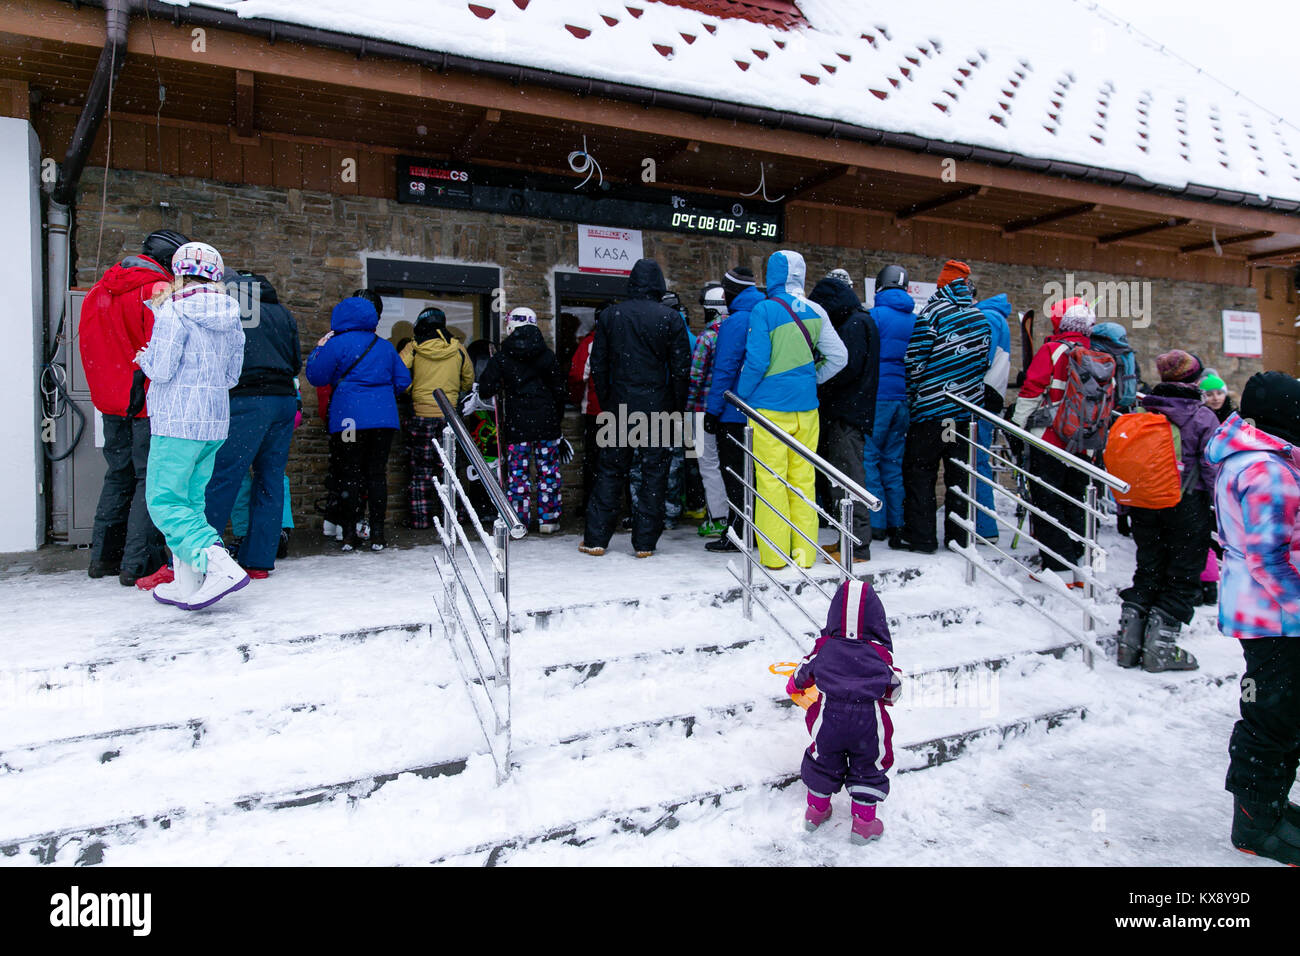 Skifahrer, Snowboarder und Touristen Schlange an der Kasse zu kaufen, Ski-Pass für den Berg Skrzyczne Gipfel in Szczyrk Polen Stockfoto